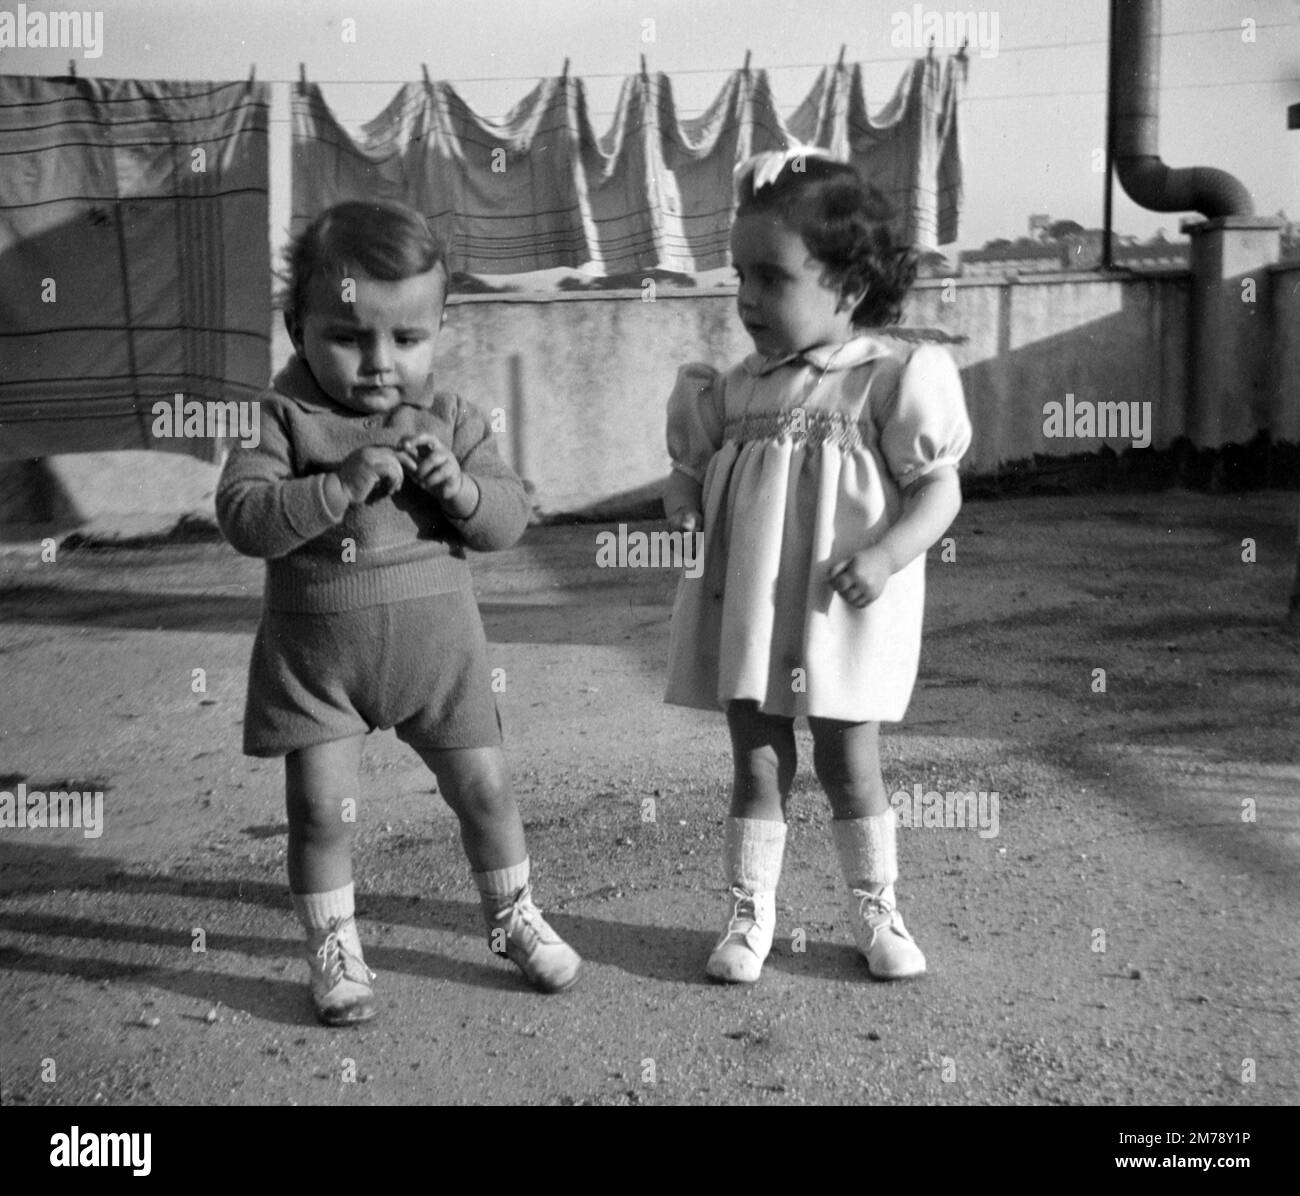 1940s enfants français, tout-petits, tout-petits ou Jeune frère et sœur 1947 France. Photographie noir et blanc ou monochrome vintage. Banque D'Images